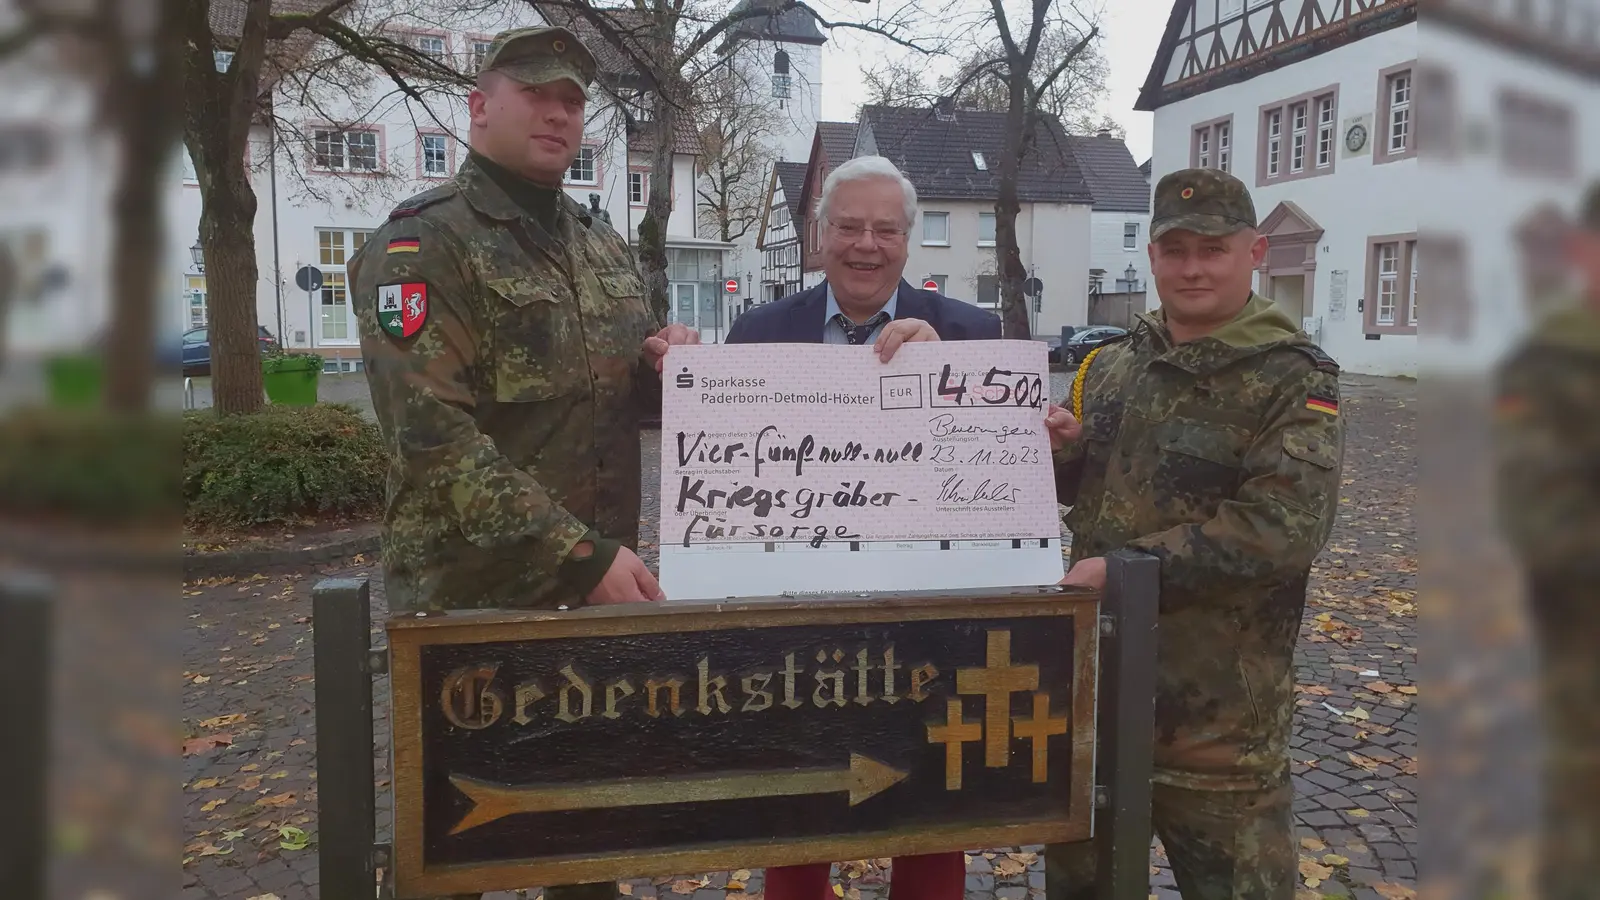 Der Kompaniechef, Carl-August Schübeler und der Kompaniefeldwebel freuen sich über die Höhe der Spendensumme.  (Foto: Barbara Siebrecht)